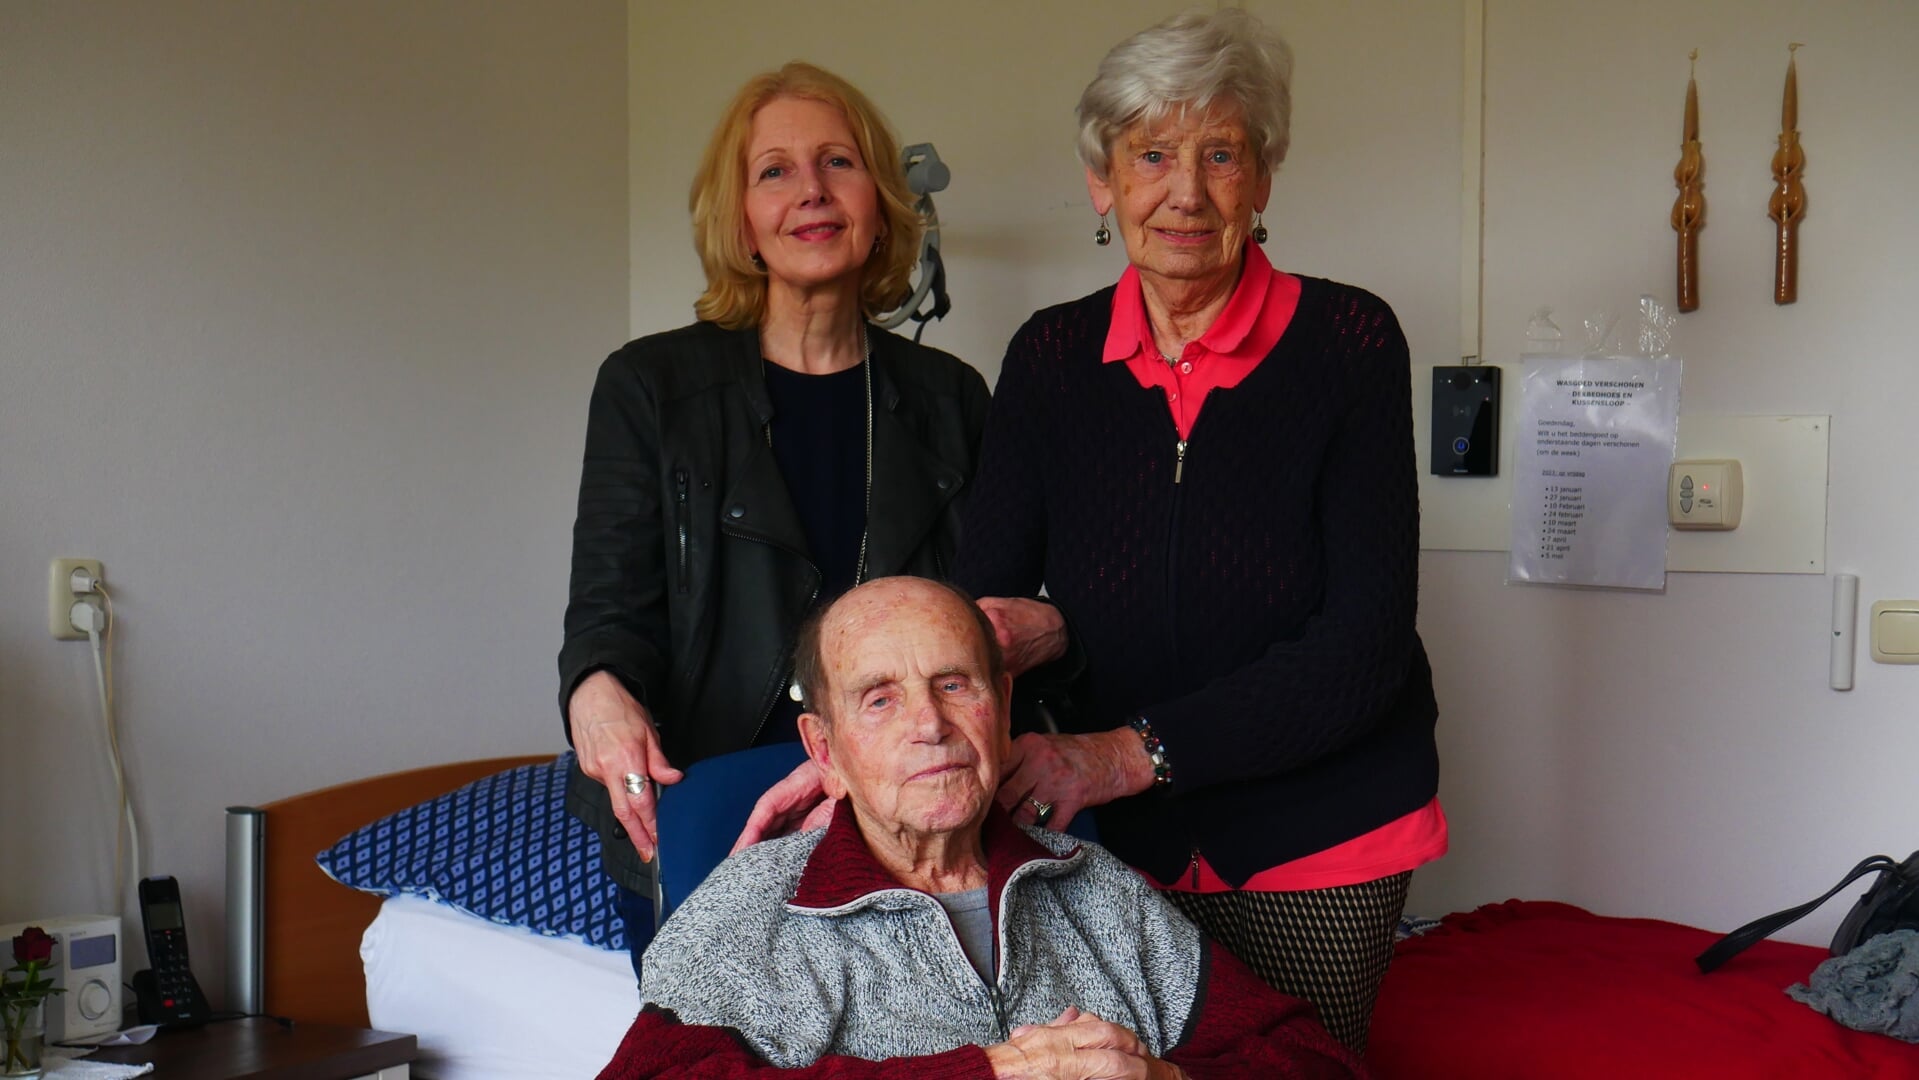 José Poncin (66) in woonzorgcentrum Steenvoorde, waar haar ouders Erica (91) en Bep (99) wonen.